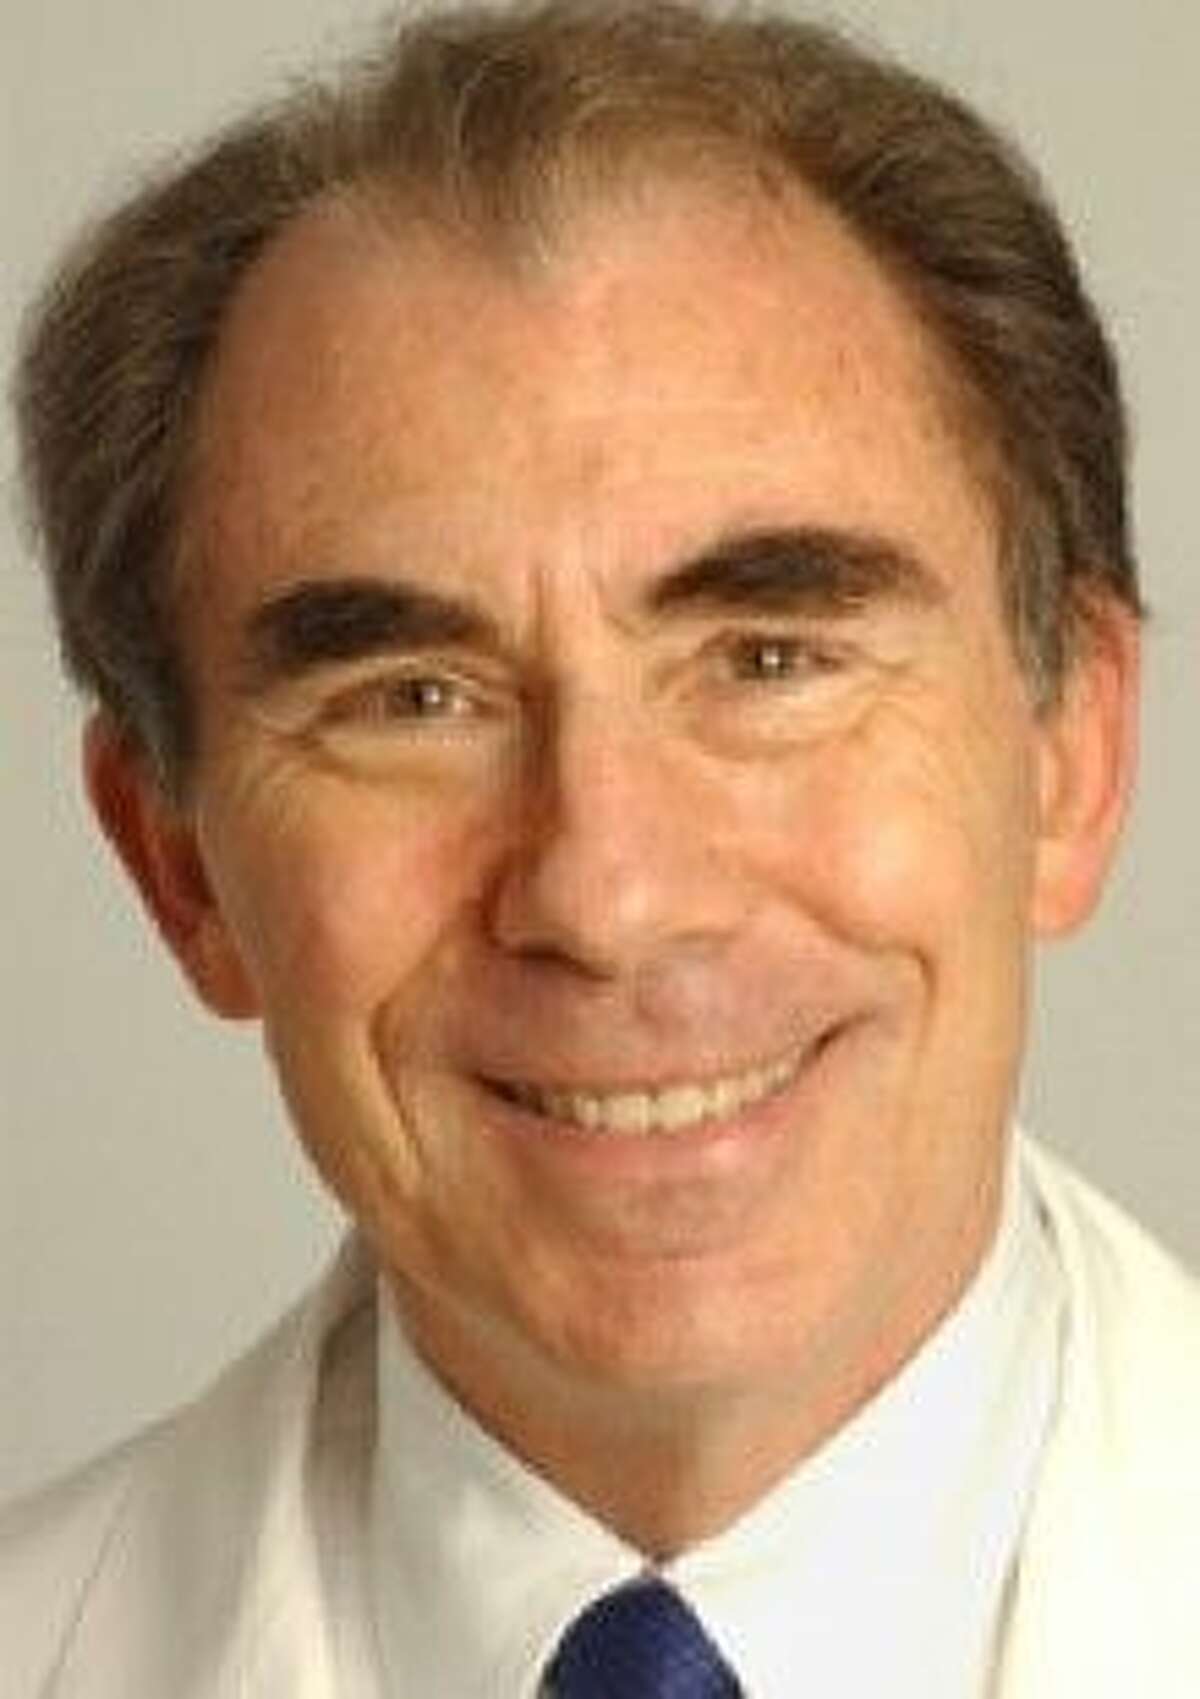 Dr. Anthony L. Komaroff